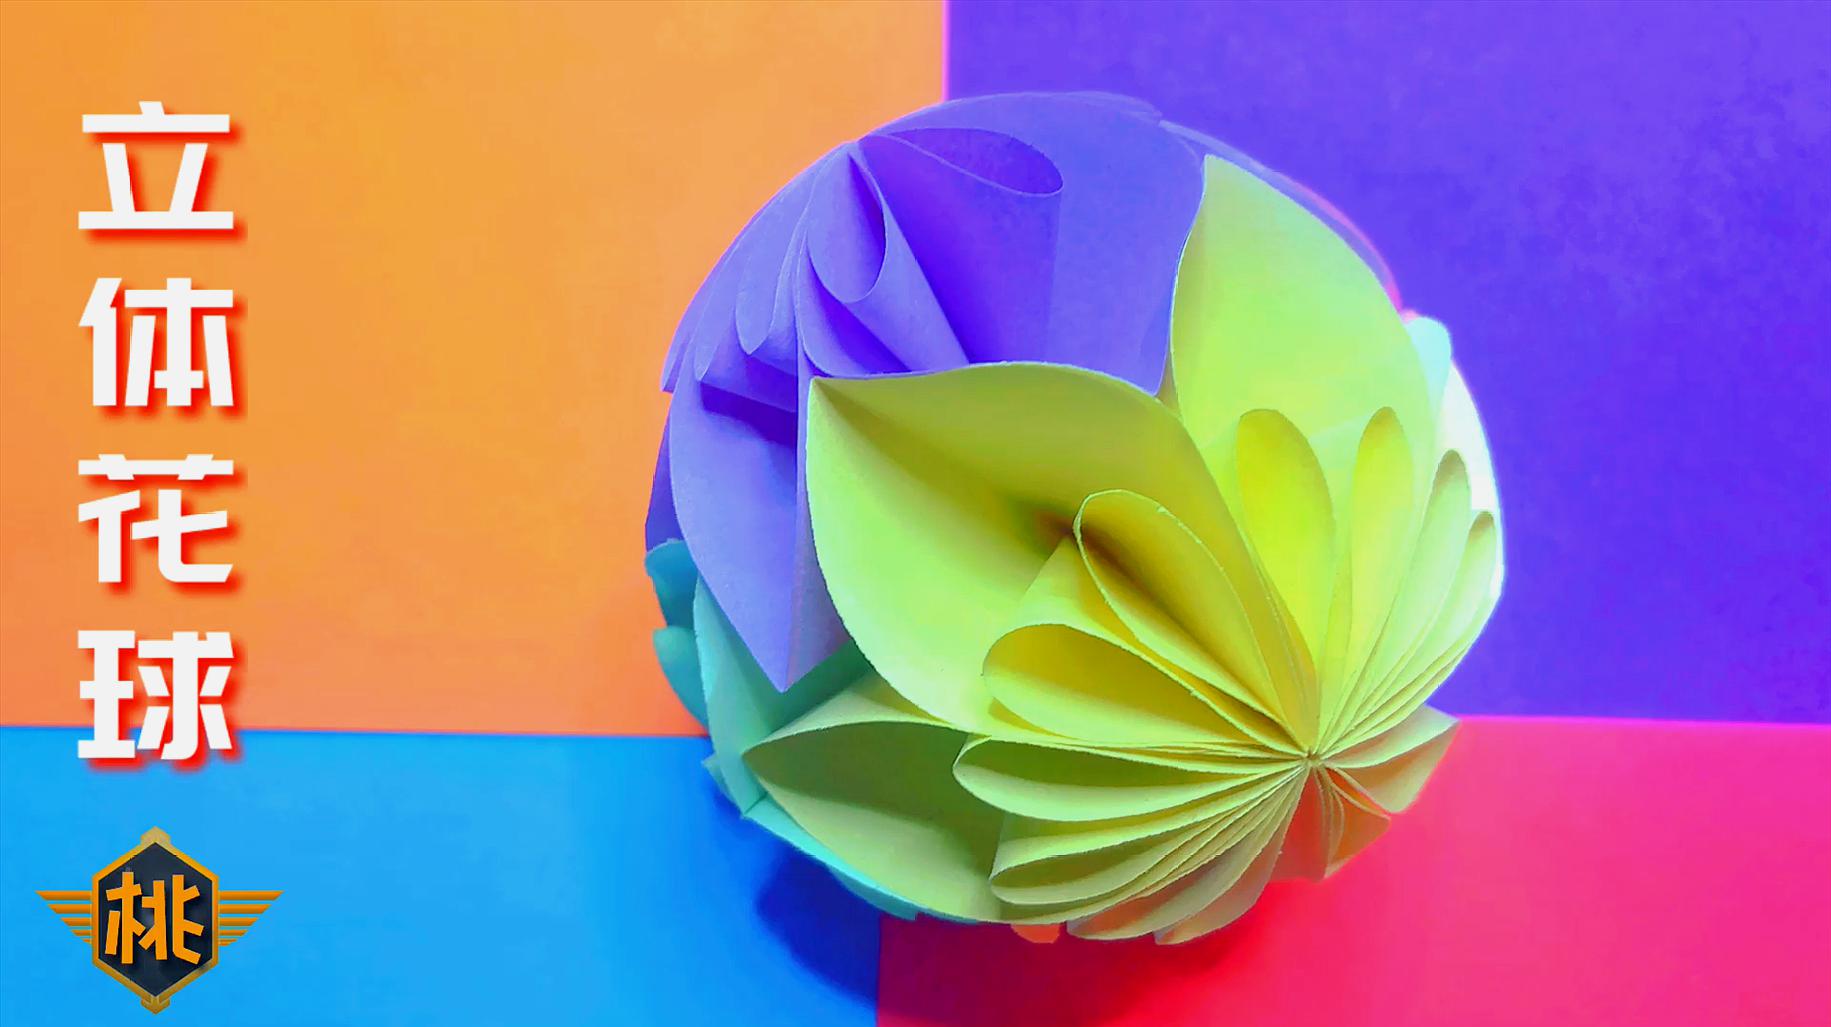 创意手工教程:超级漂亮的折纸立体花球,制作方法也很简单